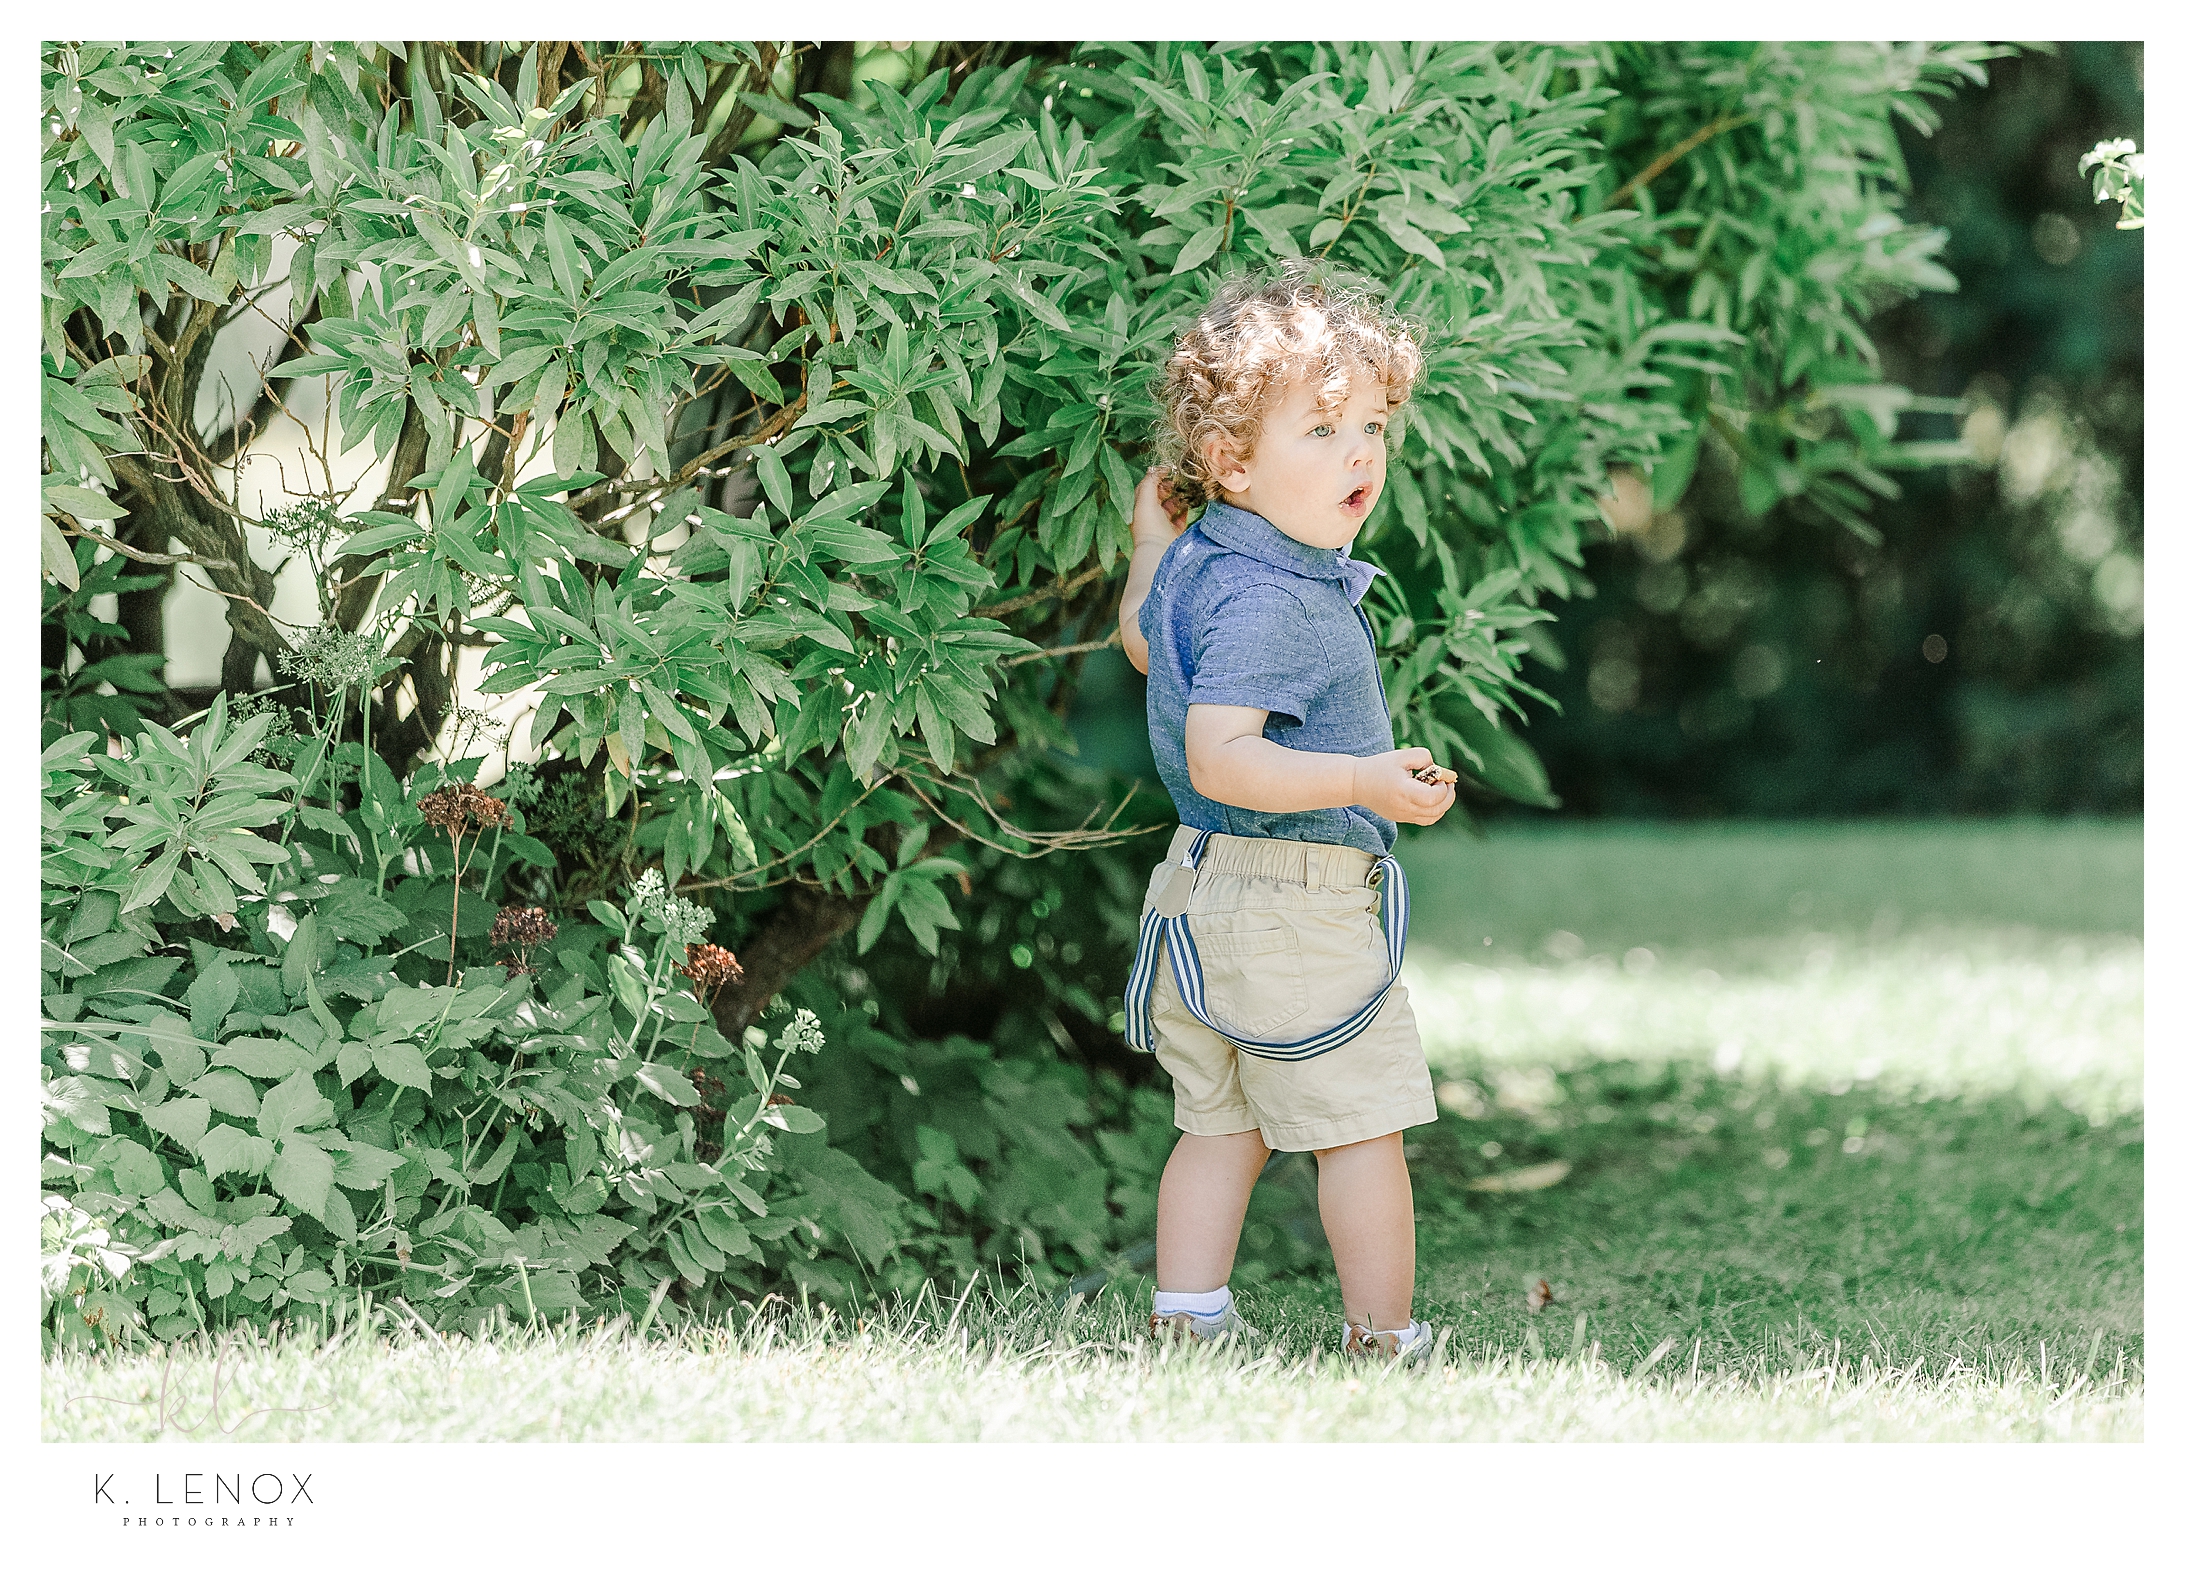 Little boy shows surprisement while standing near a bush.  